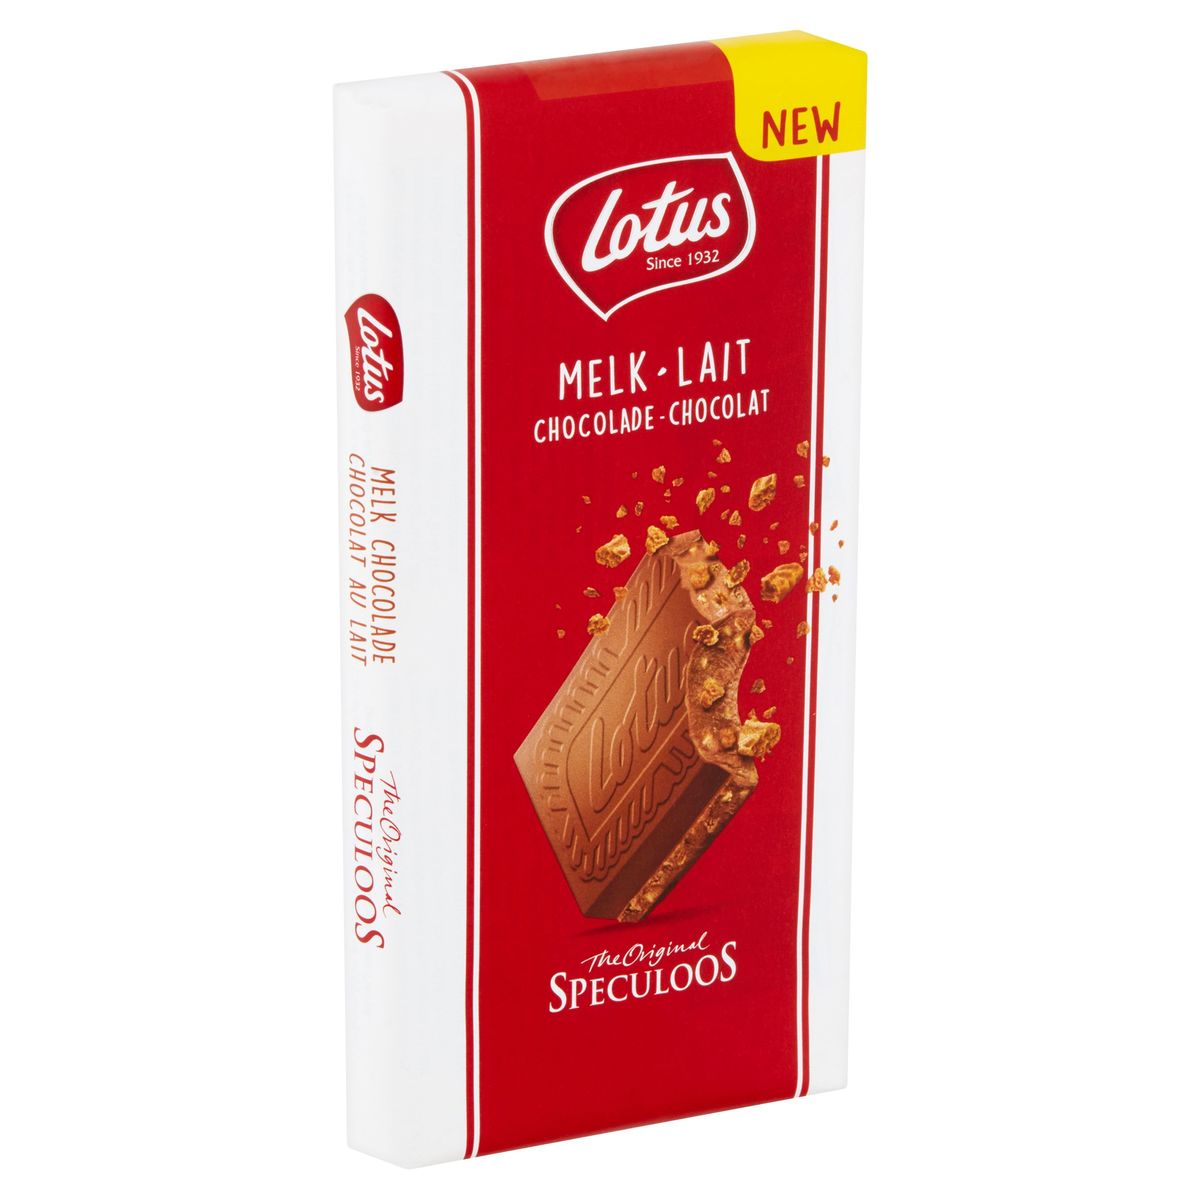 Lotus Biscoff Melkchocolade met speculoosstukjes 180g